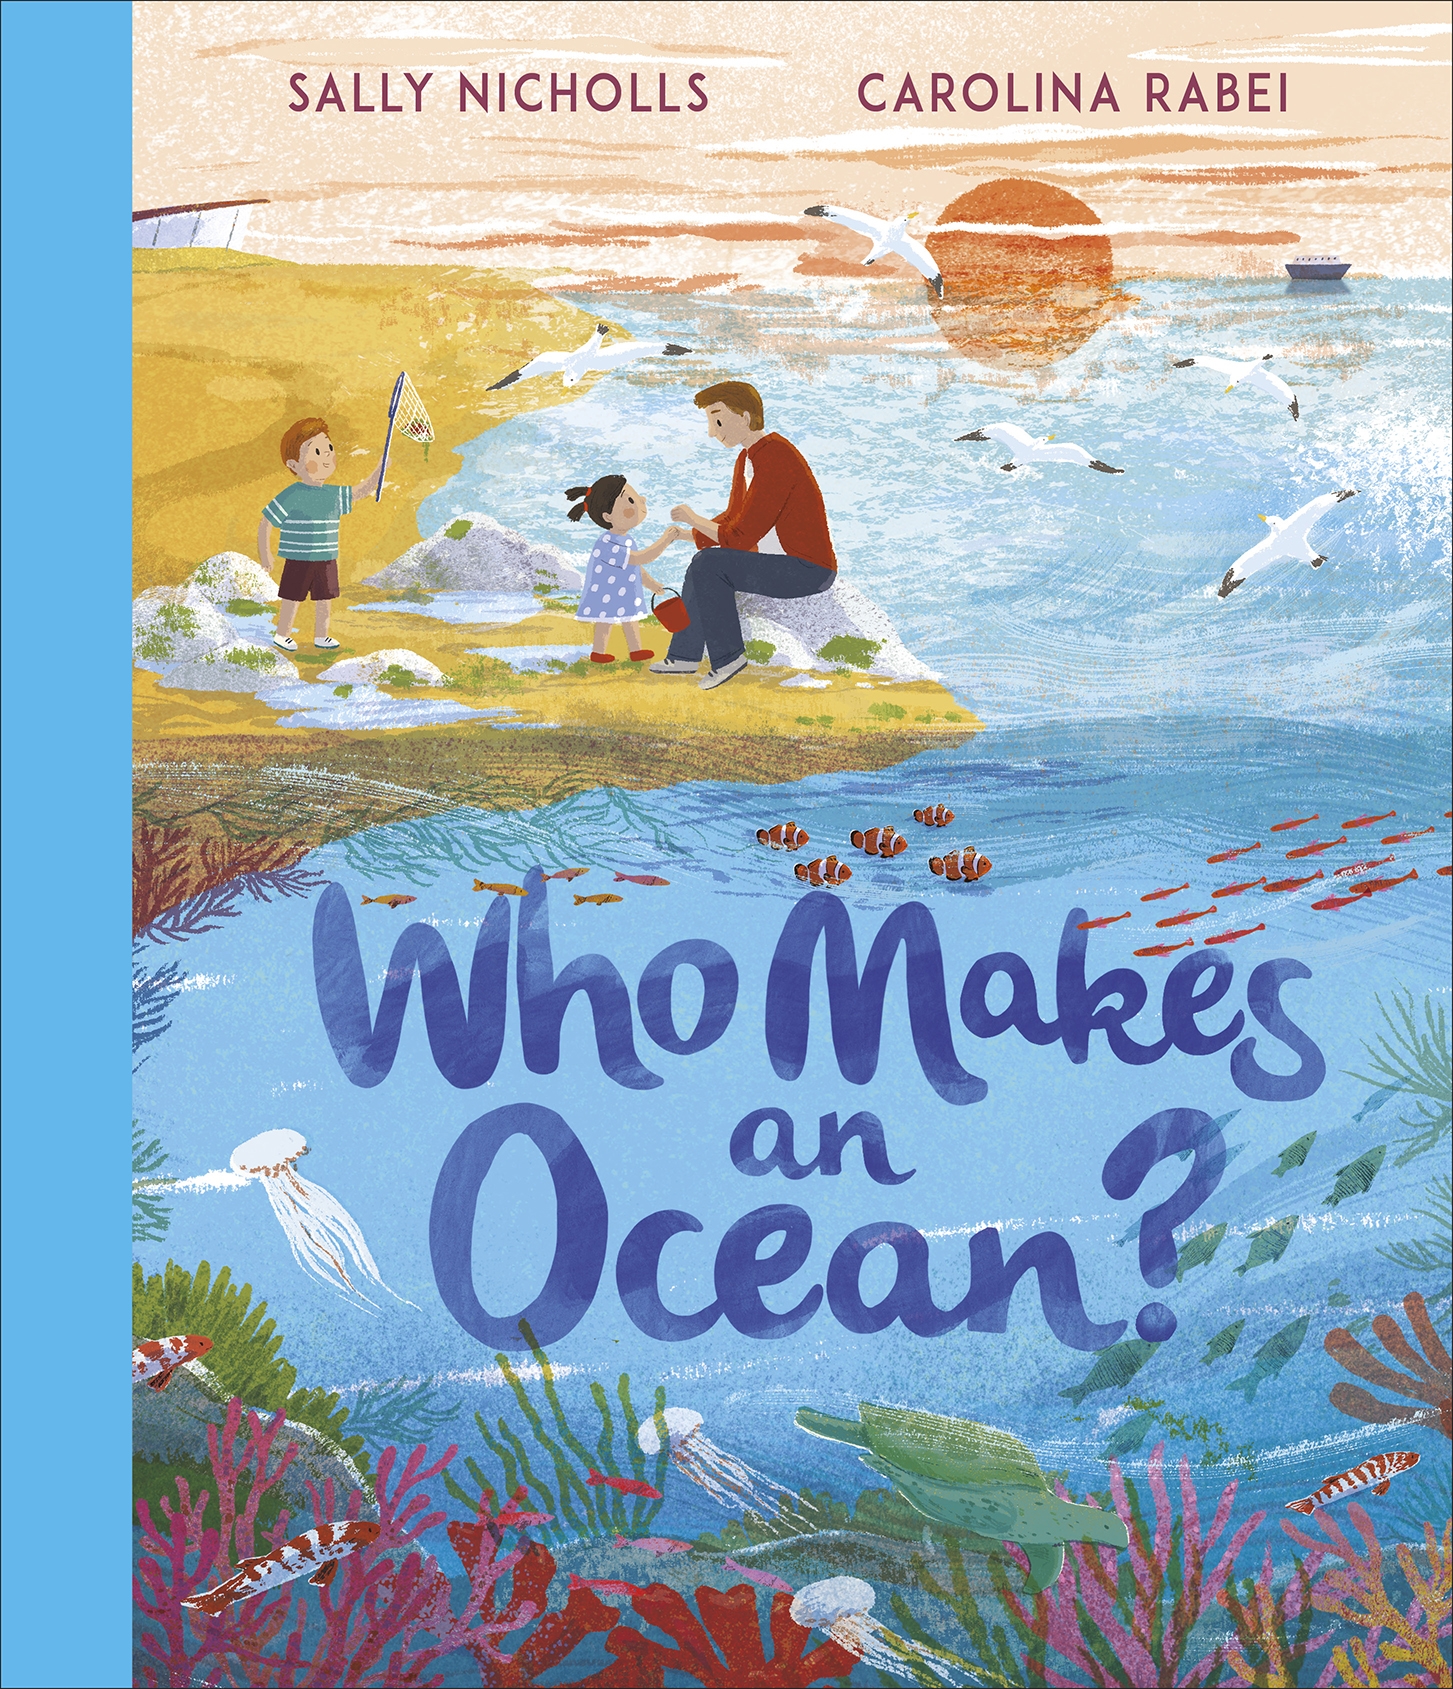 Who Makes an Ocean?